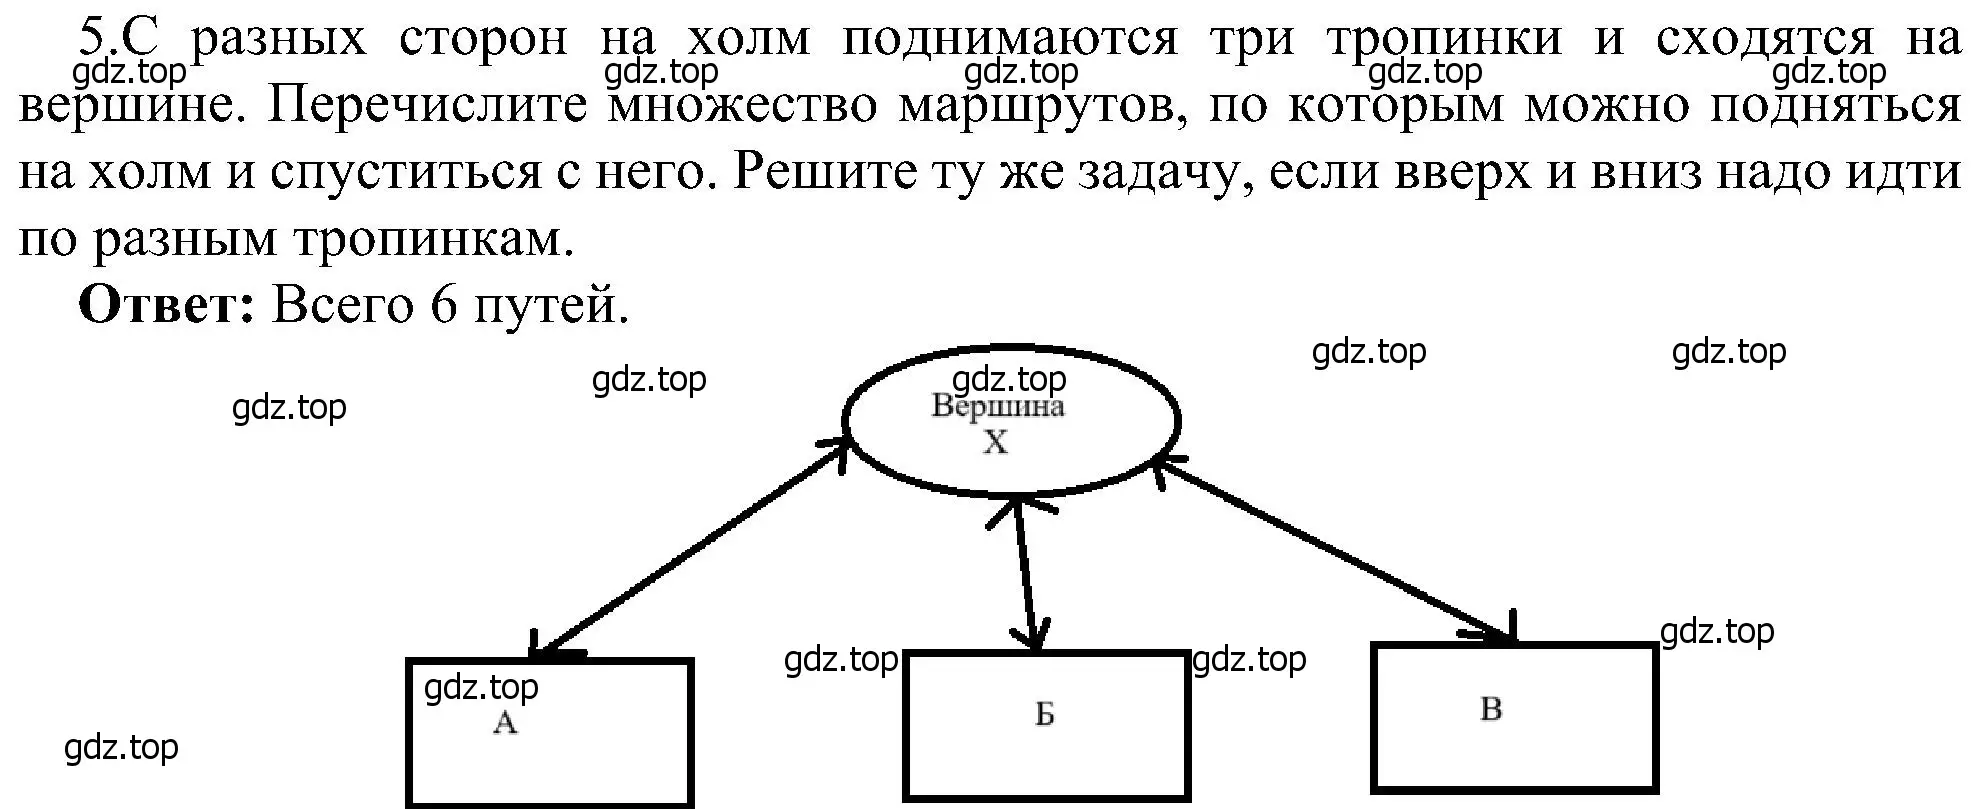 Решение номер 5 (страница 115) гдз по информатике 6 класс Босова, Босова, учебник